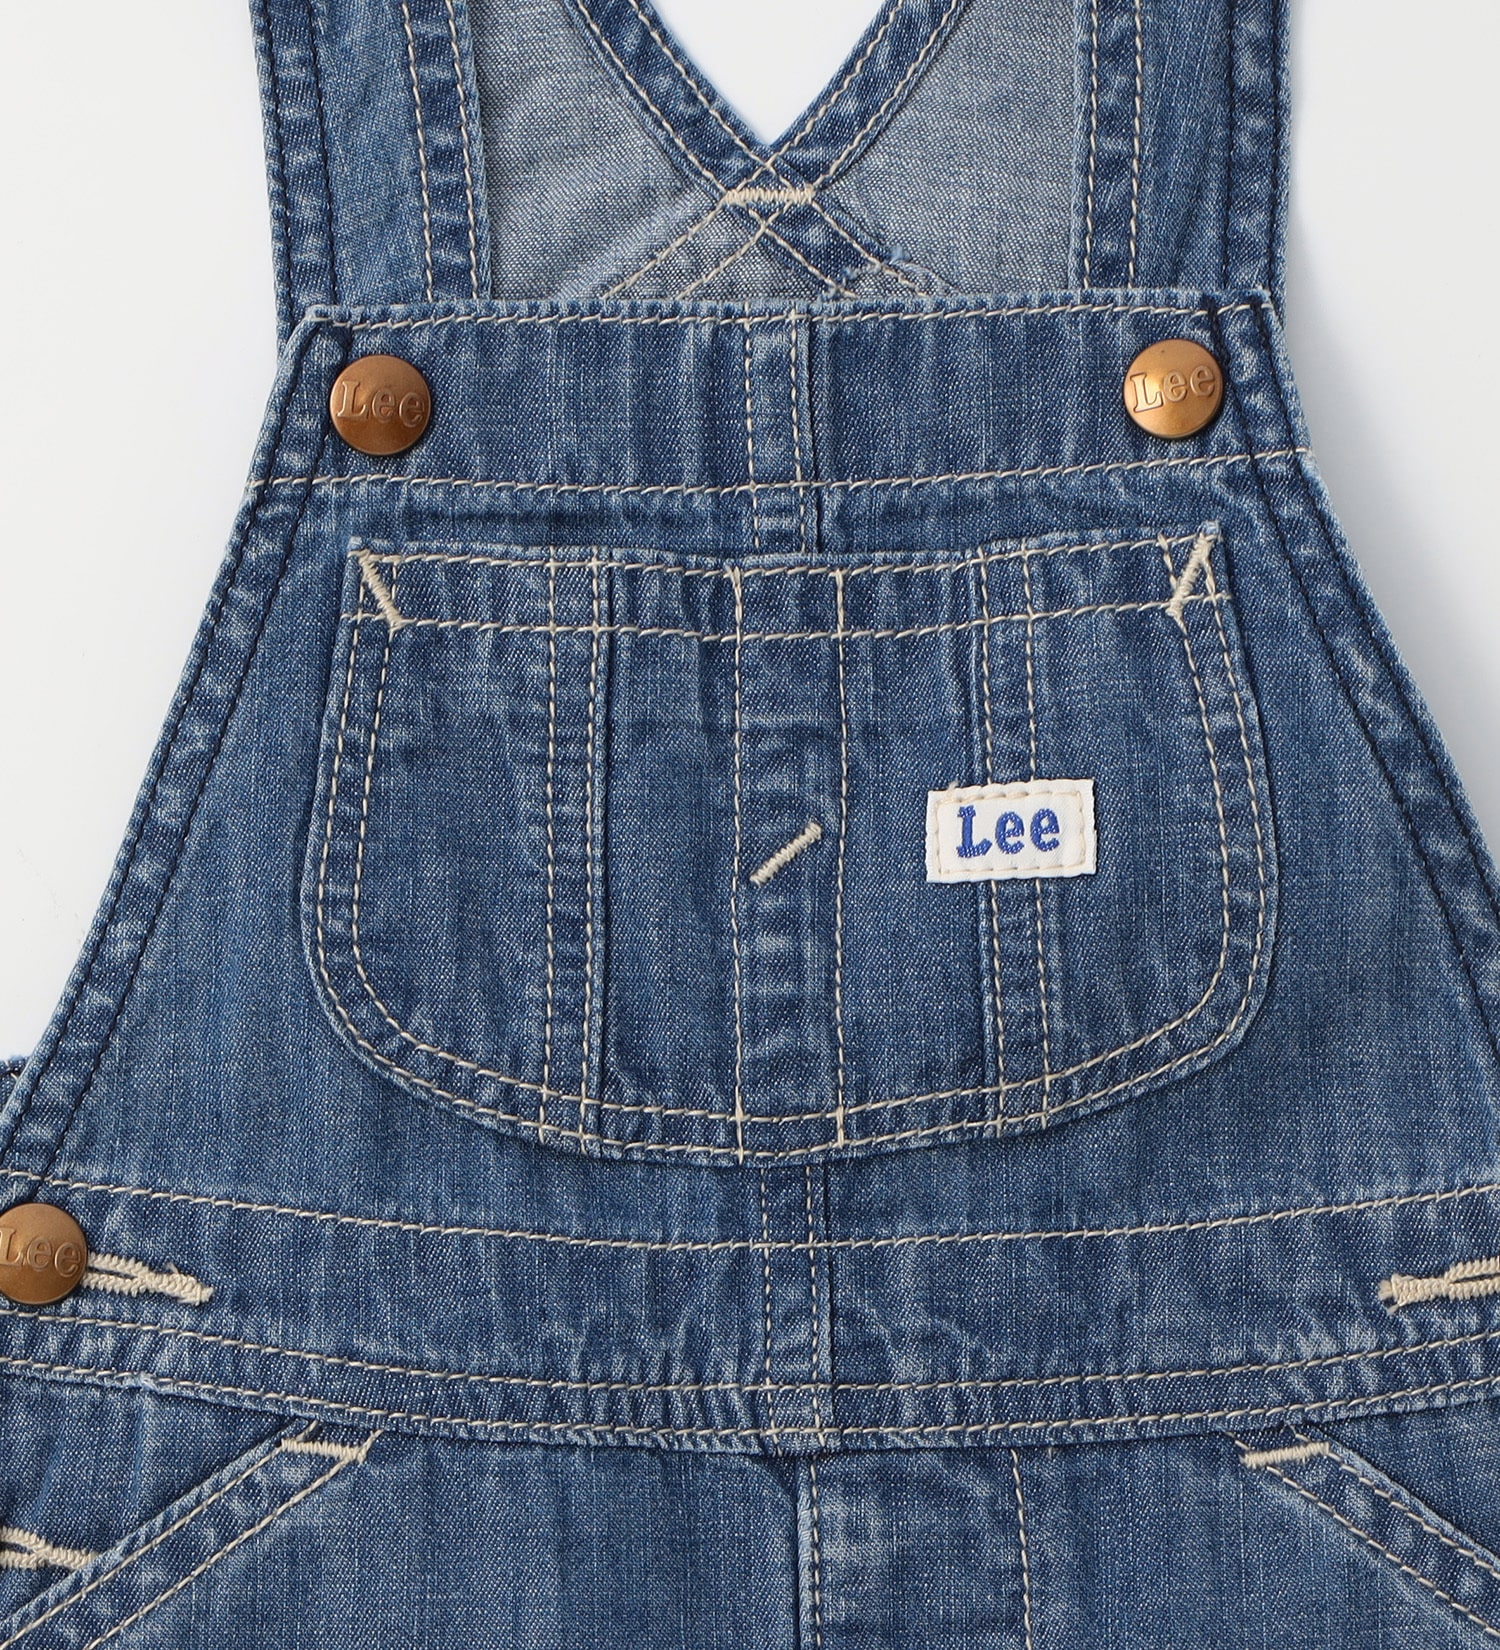 Lee(リー)の【70-90cm】ベビー ファーストデニムオーバーオールスカート|オールインワン/ジャンパースカート/キッズ|中色ブルー